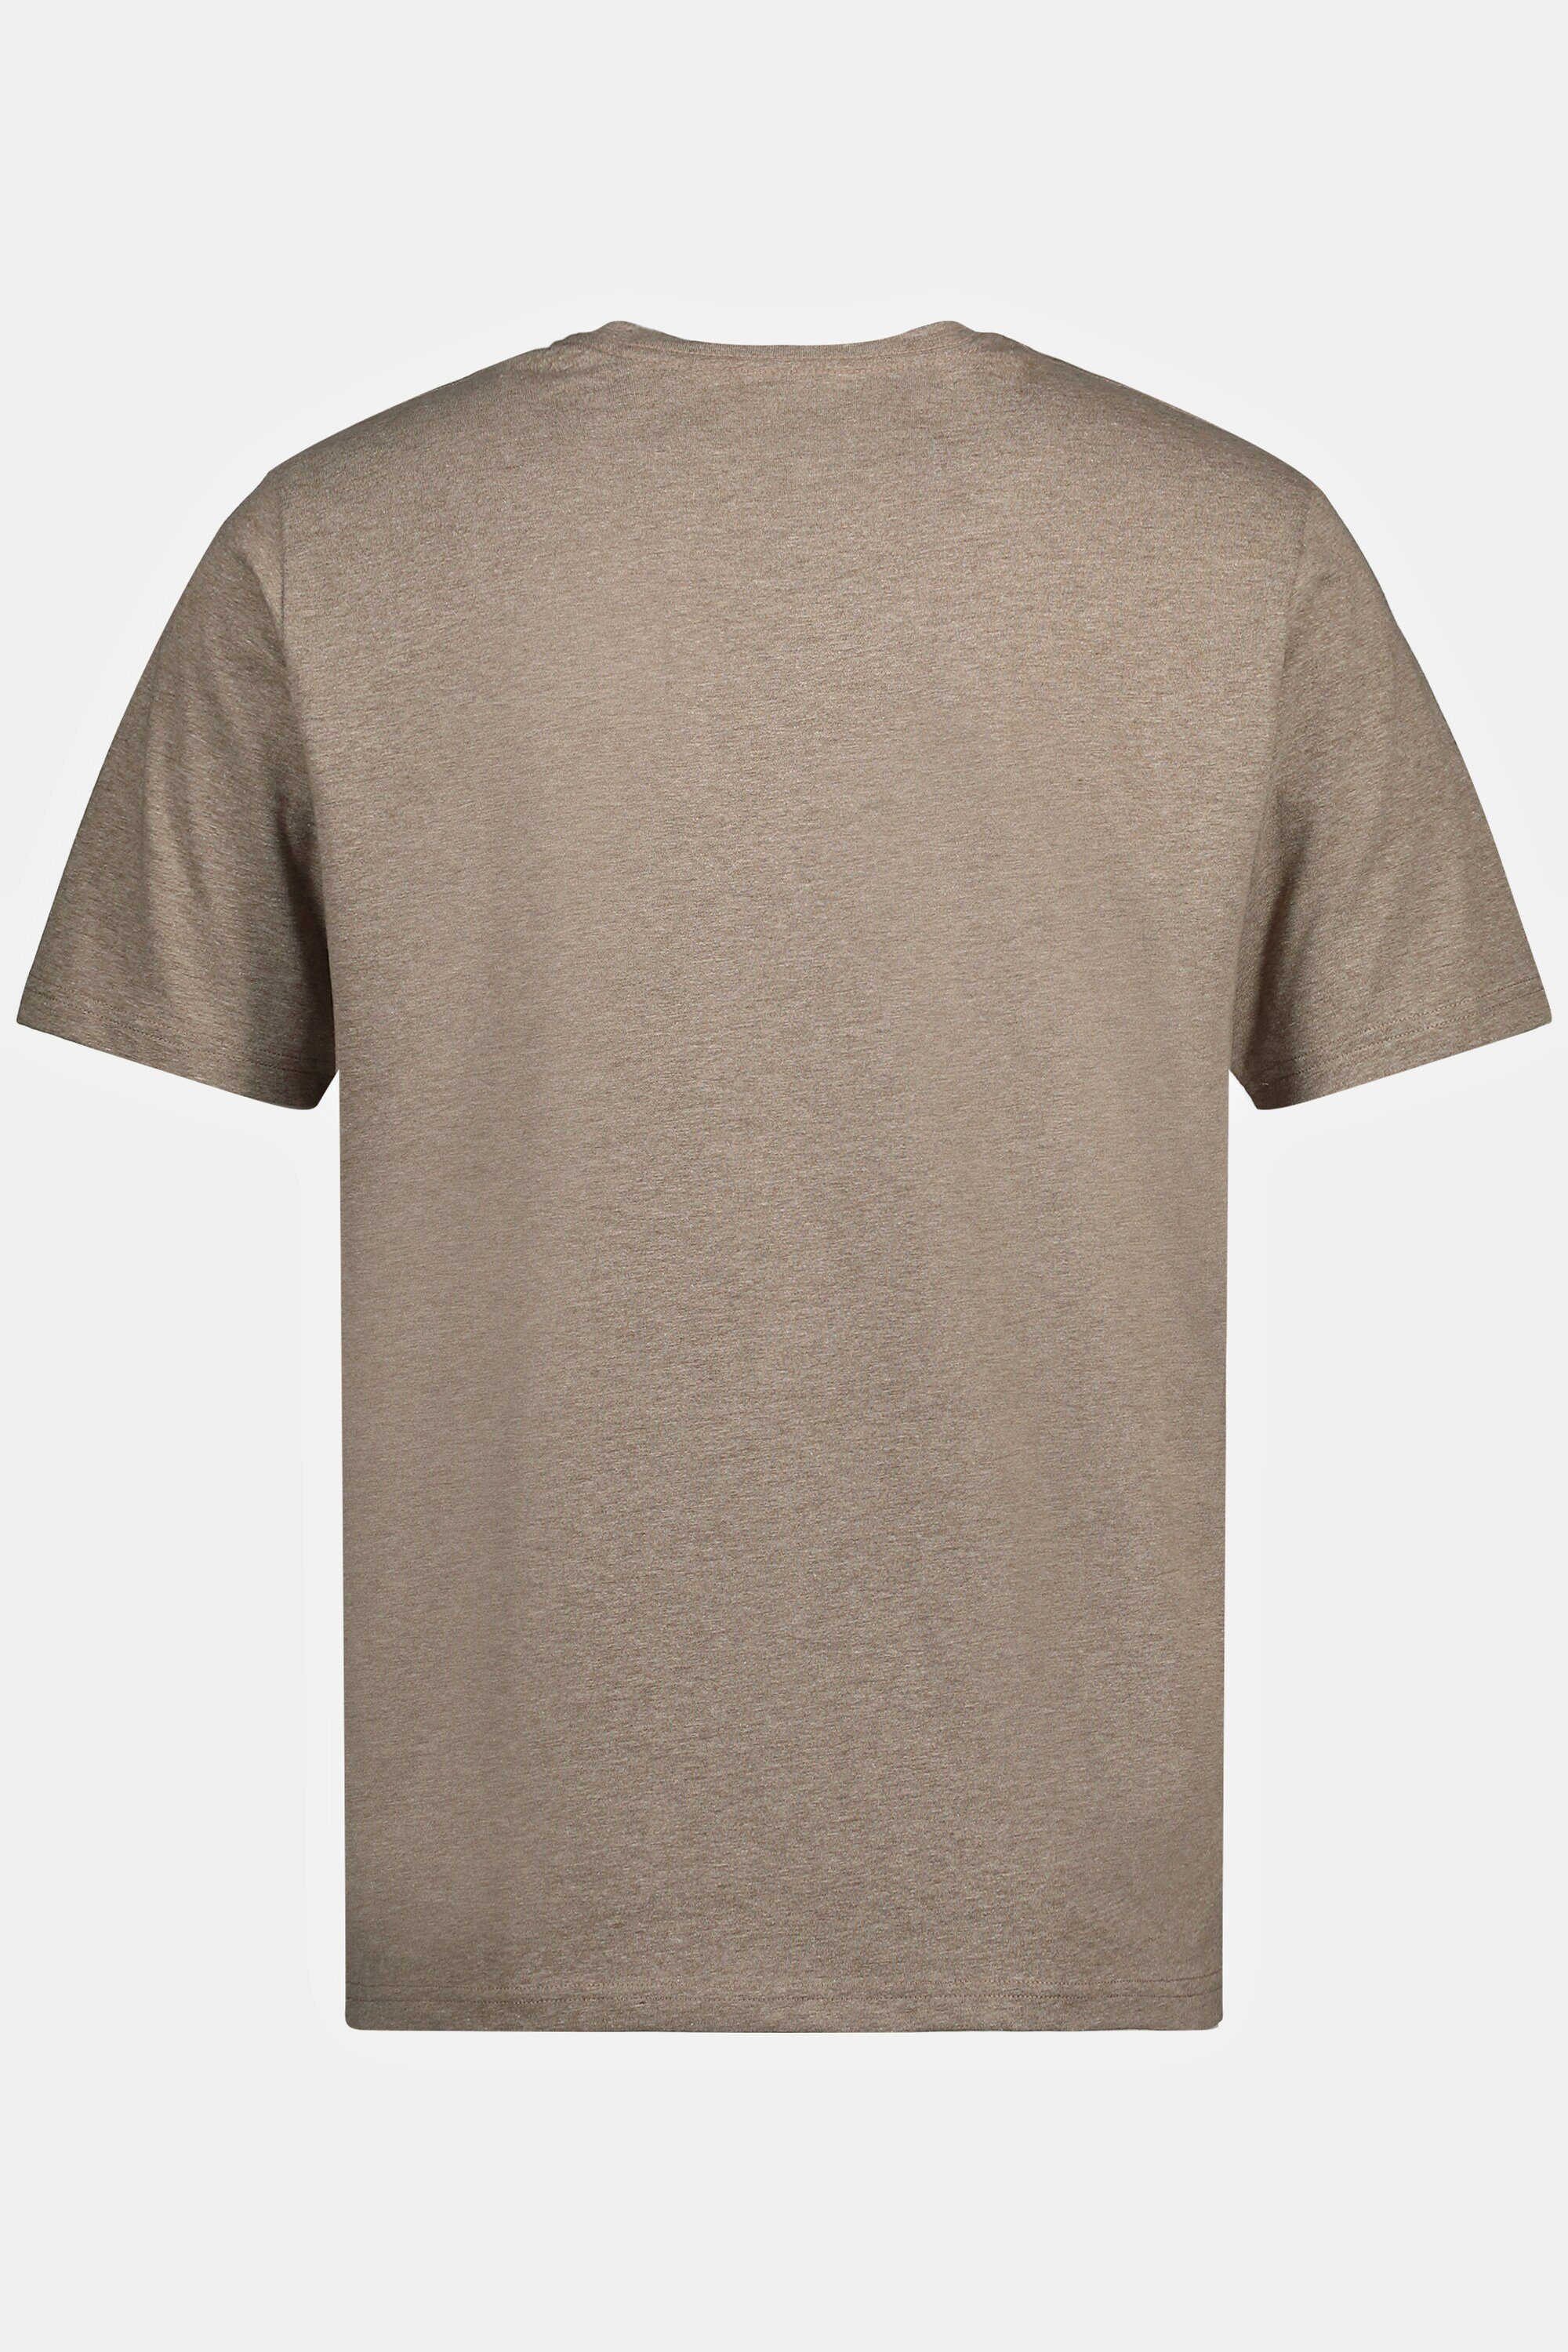 Melange-Jersey bis 8 XL JP1880 T-Shirt Rundhals Halbarm T-Shirt